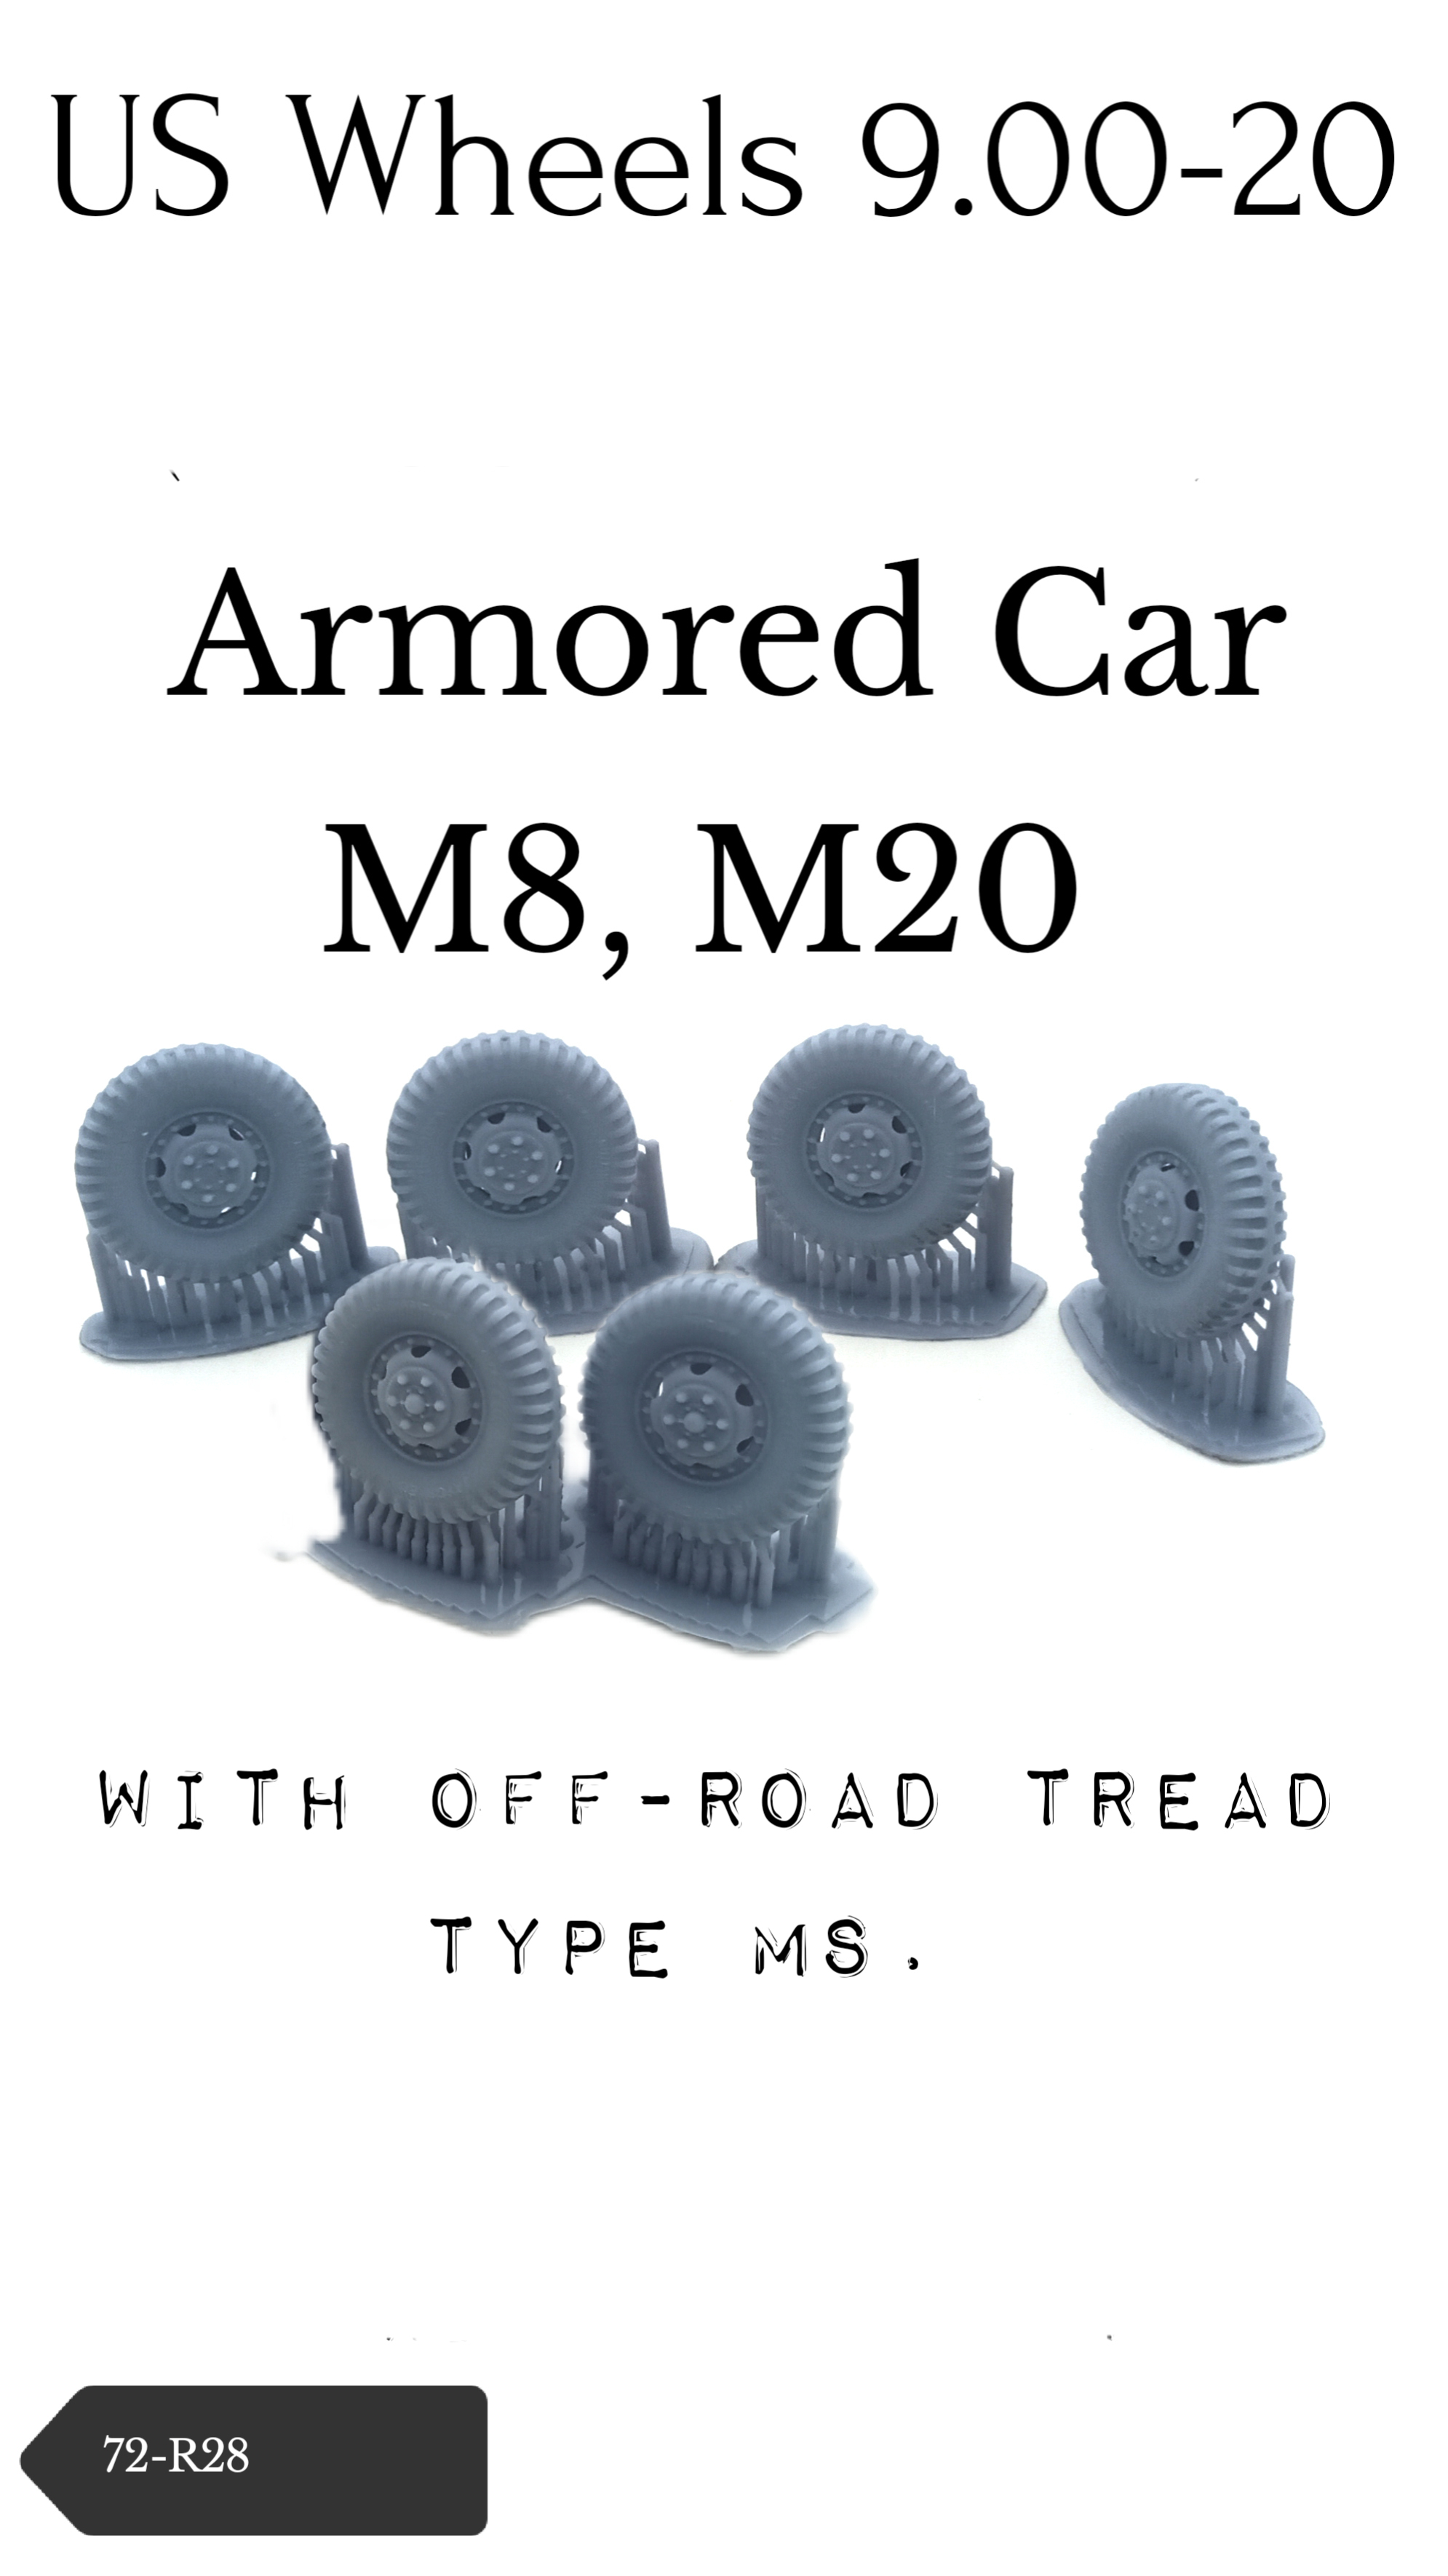 M8 / M20 wheels 9.00-20 with terrain tyre pattern